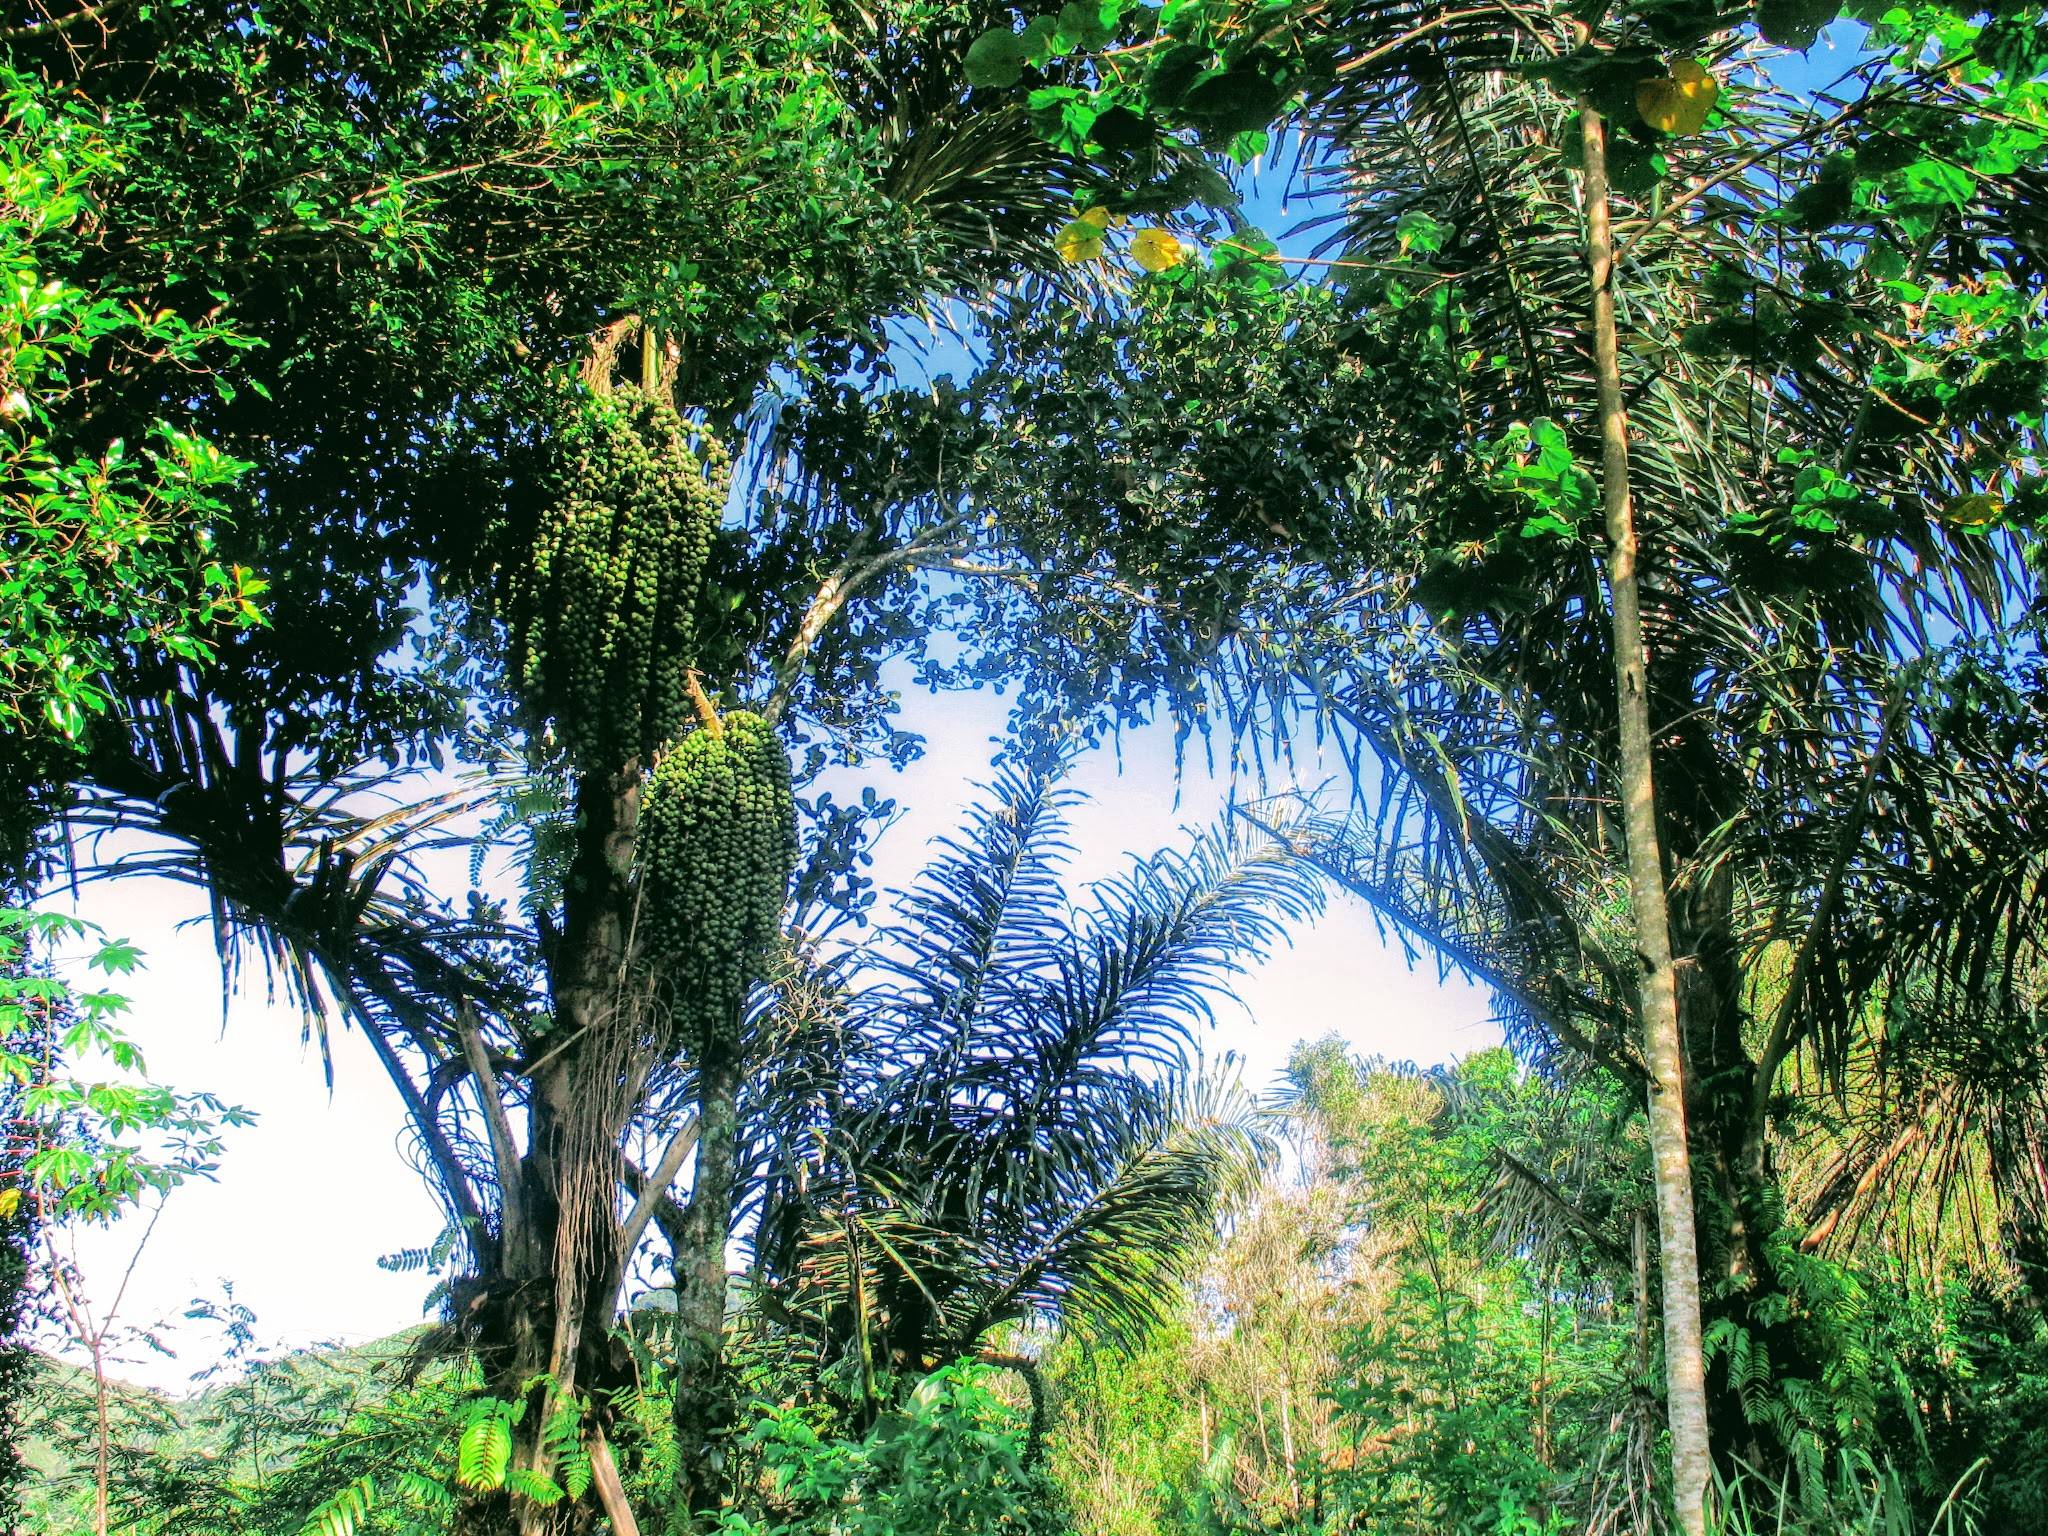 Tiap bagian dari pohon aren bermanfaat secara ekonomi dan membawa dampak bagi bagi lingkungan